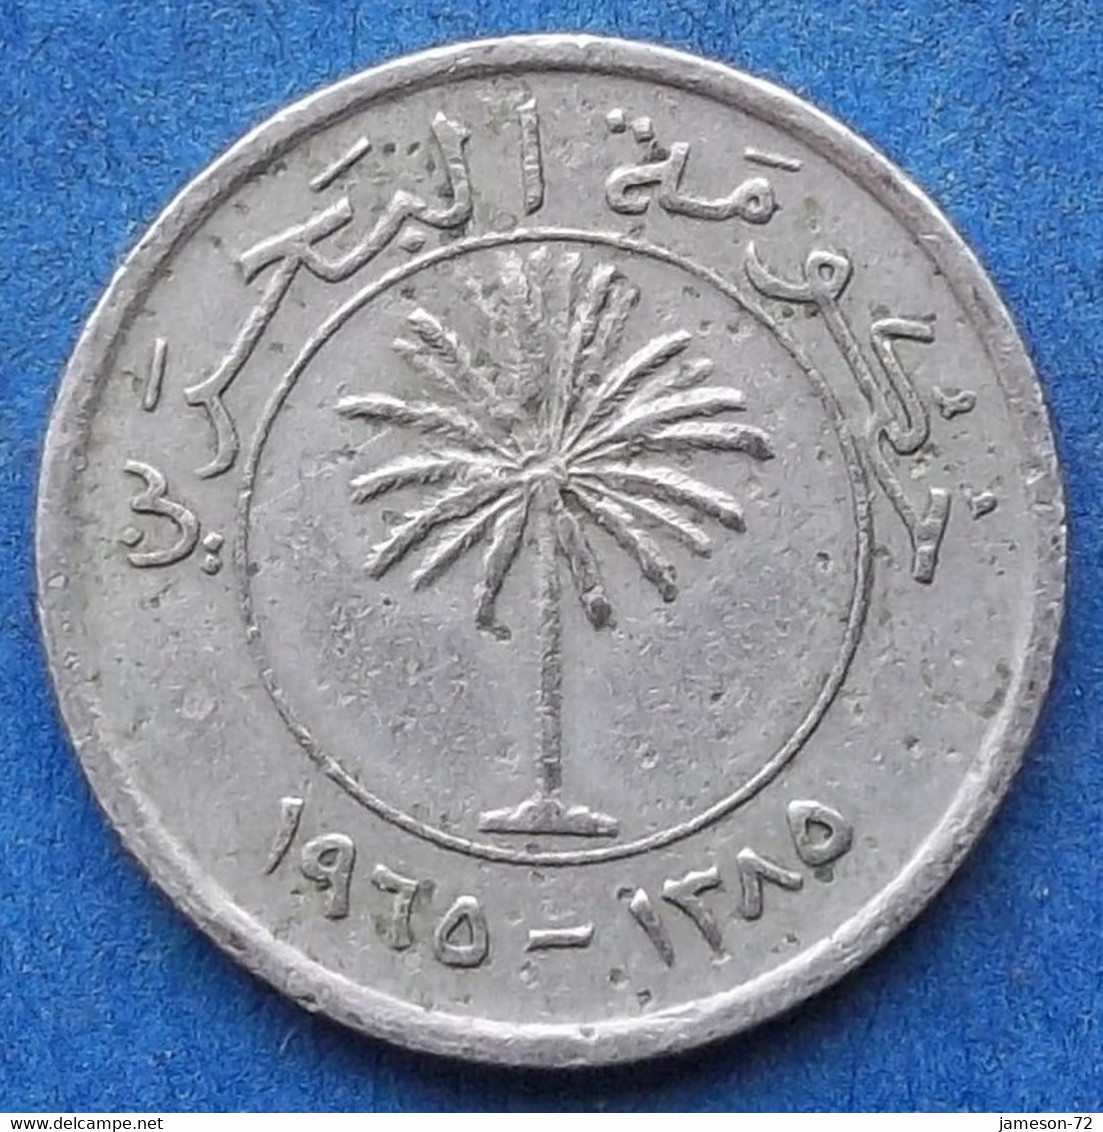 BAHRAIN - 25 Fils AH1385 1965AD KM#4 Isa Bin Salman (1961-99) - Edelweiss Coins - Bahrein